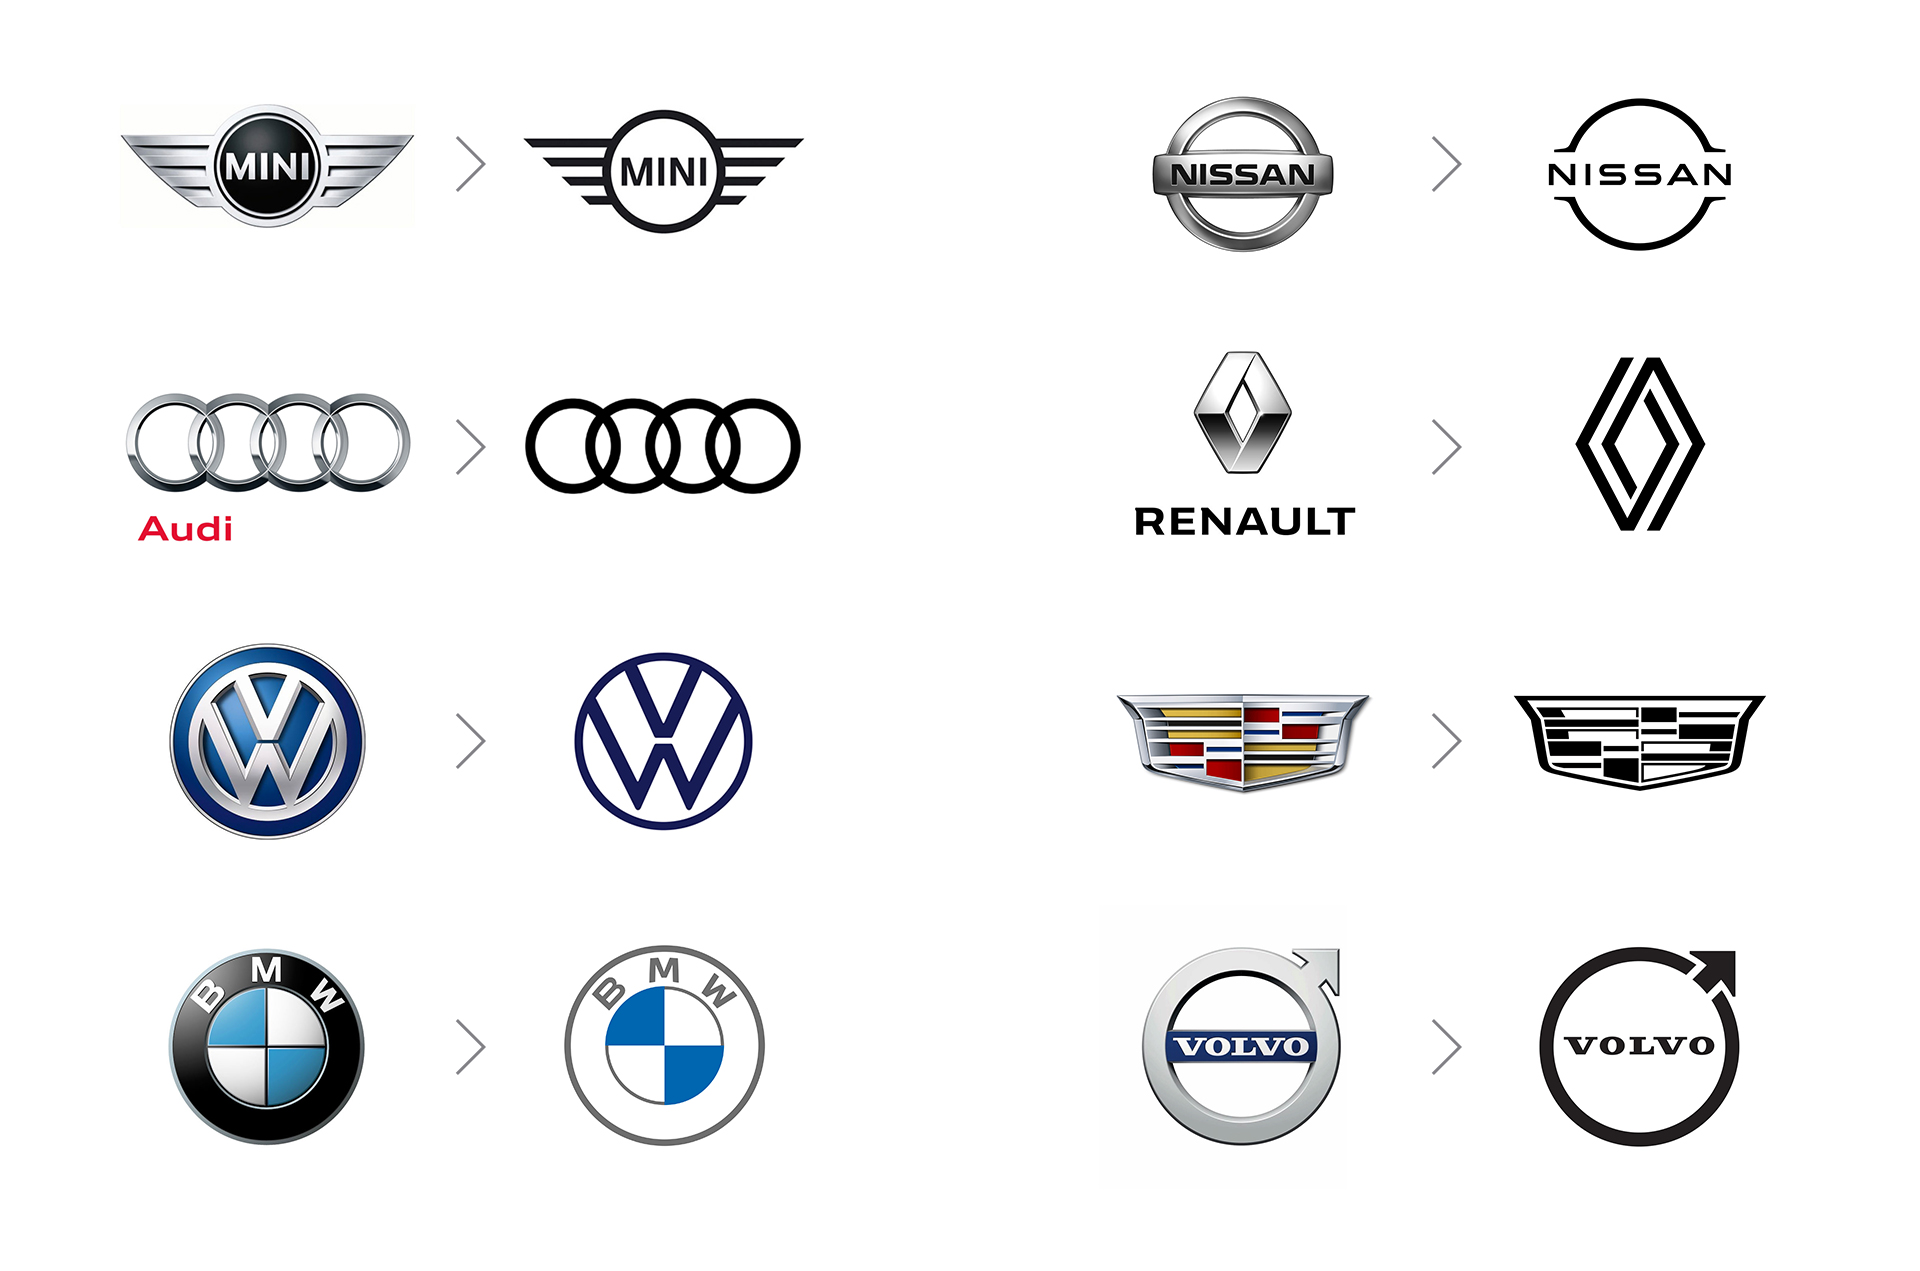 Car brand logos evolution.